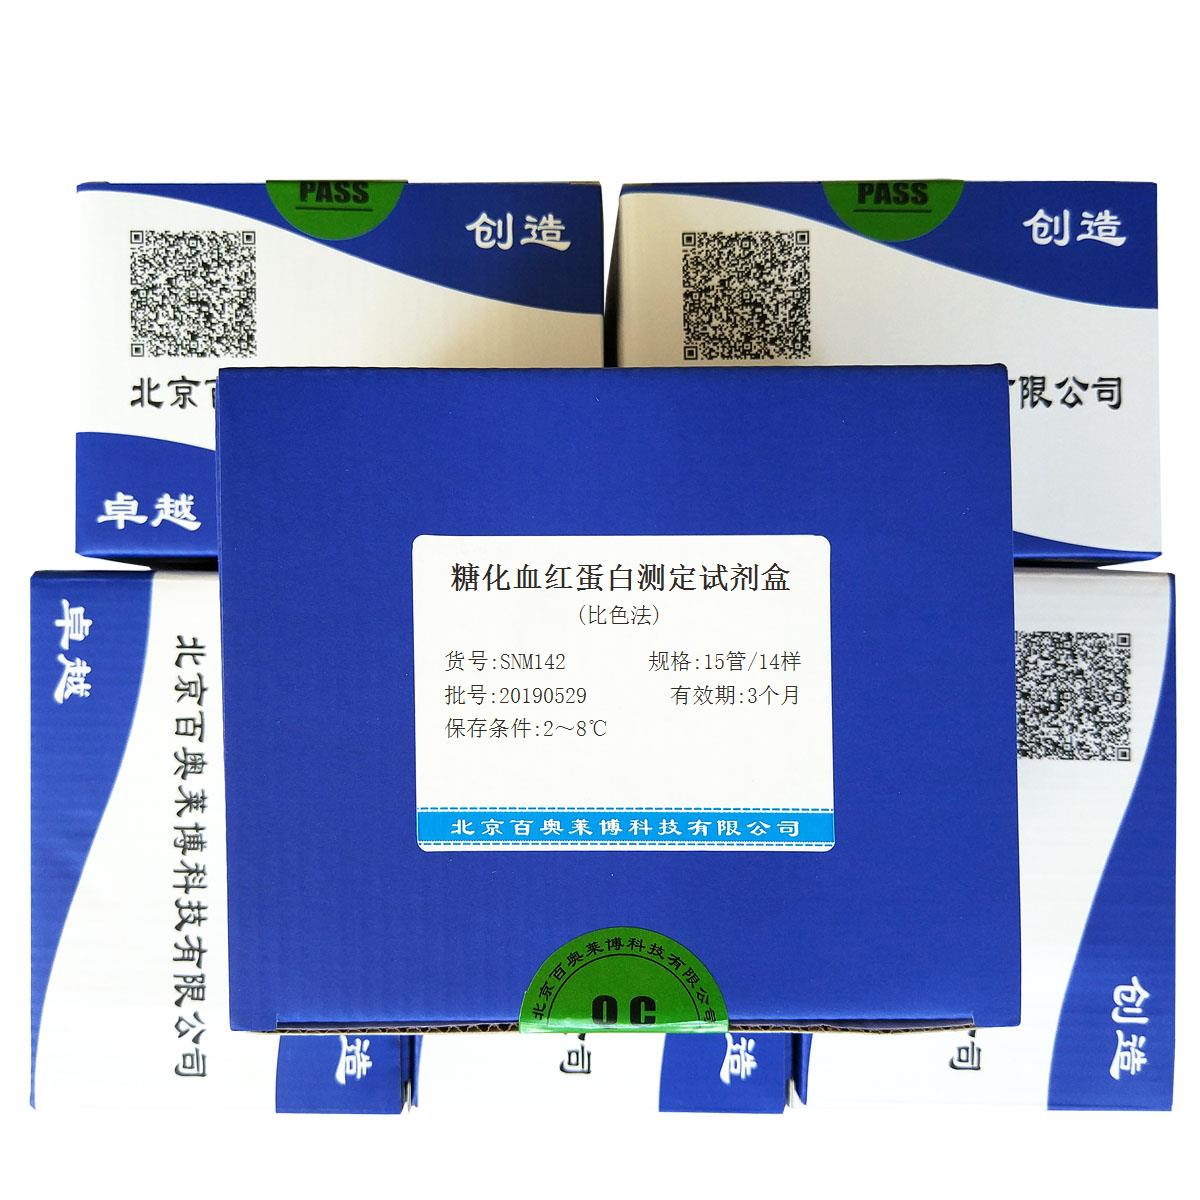 糖化血红蛋白测定试剂盒(比色法)北京价格